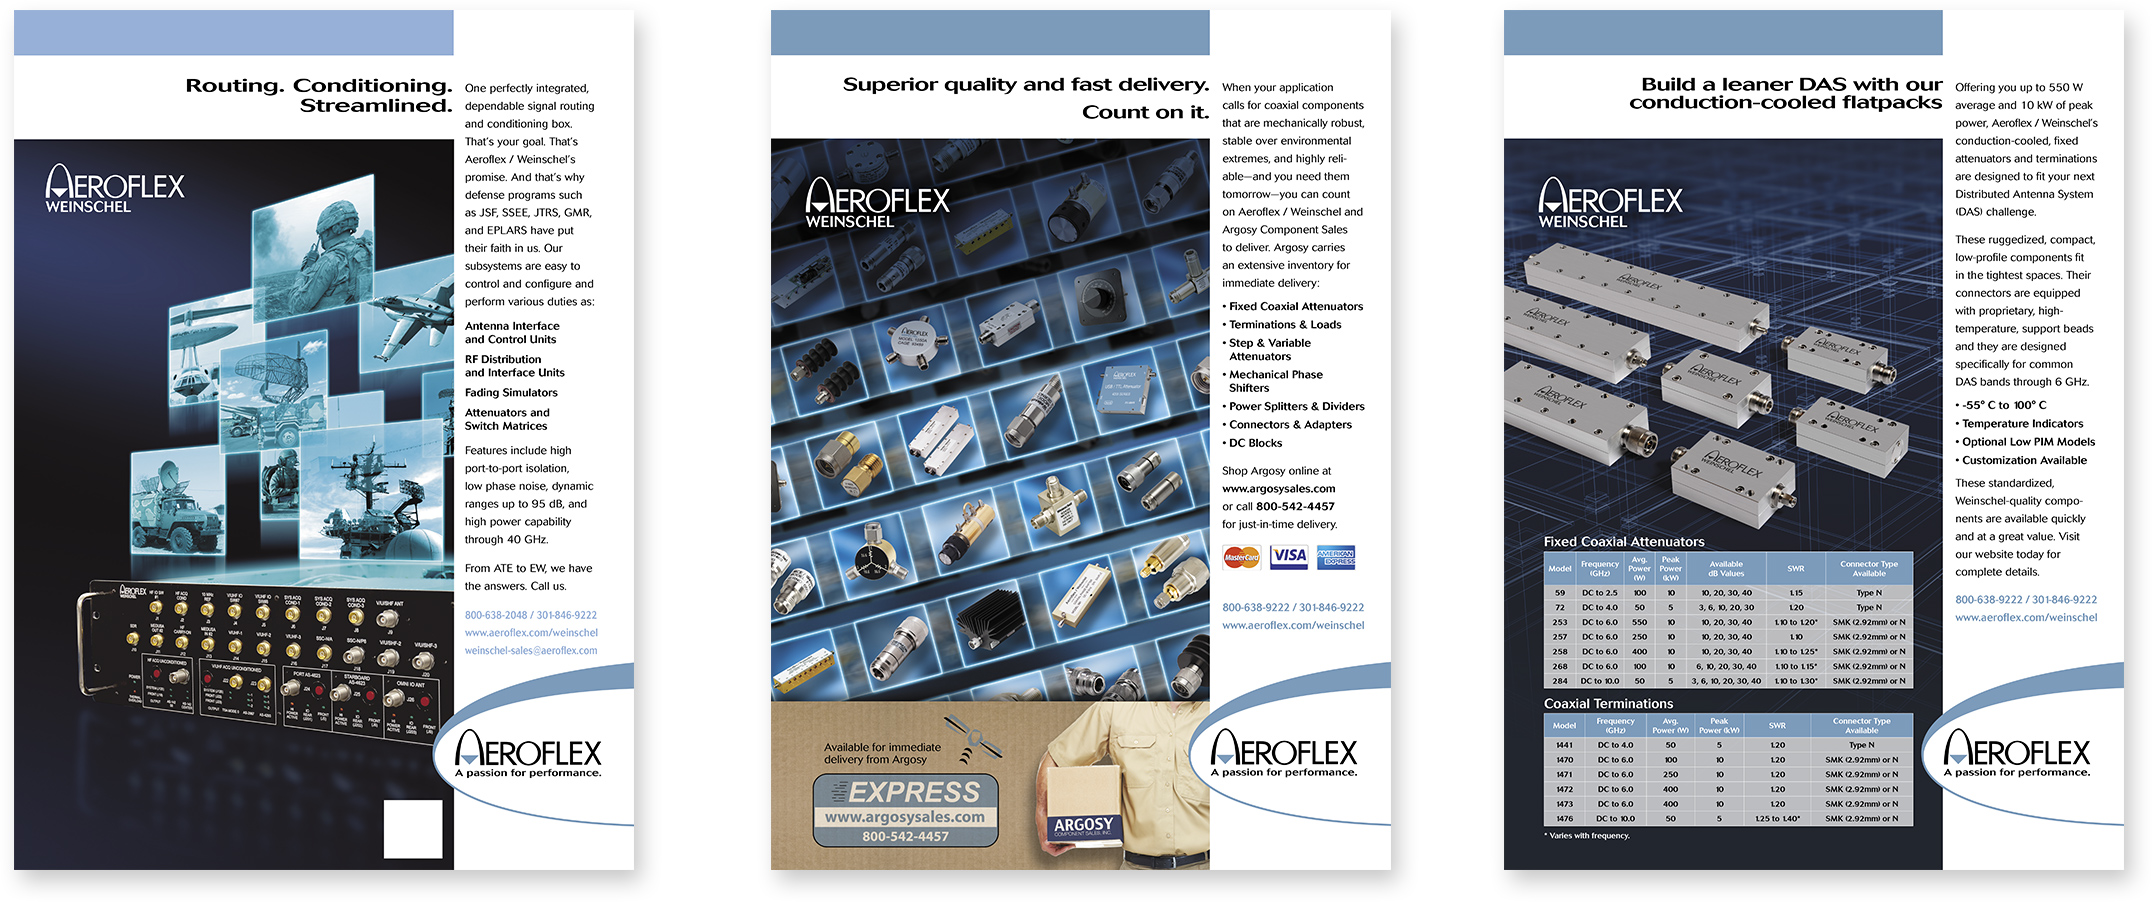 Aeroflex/Weinschel brand style Designed by Strand Marketing